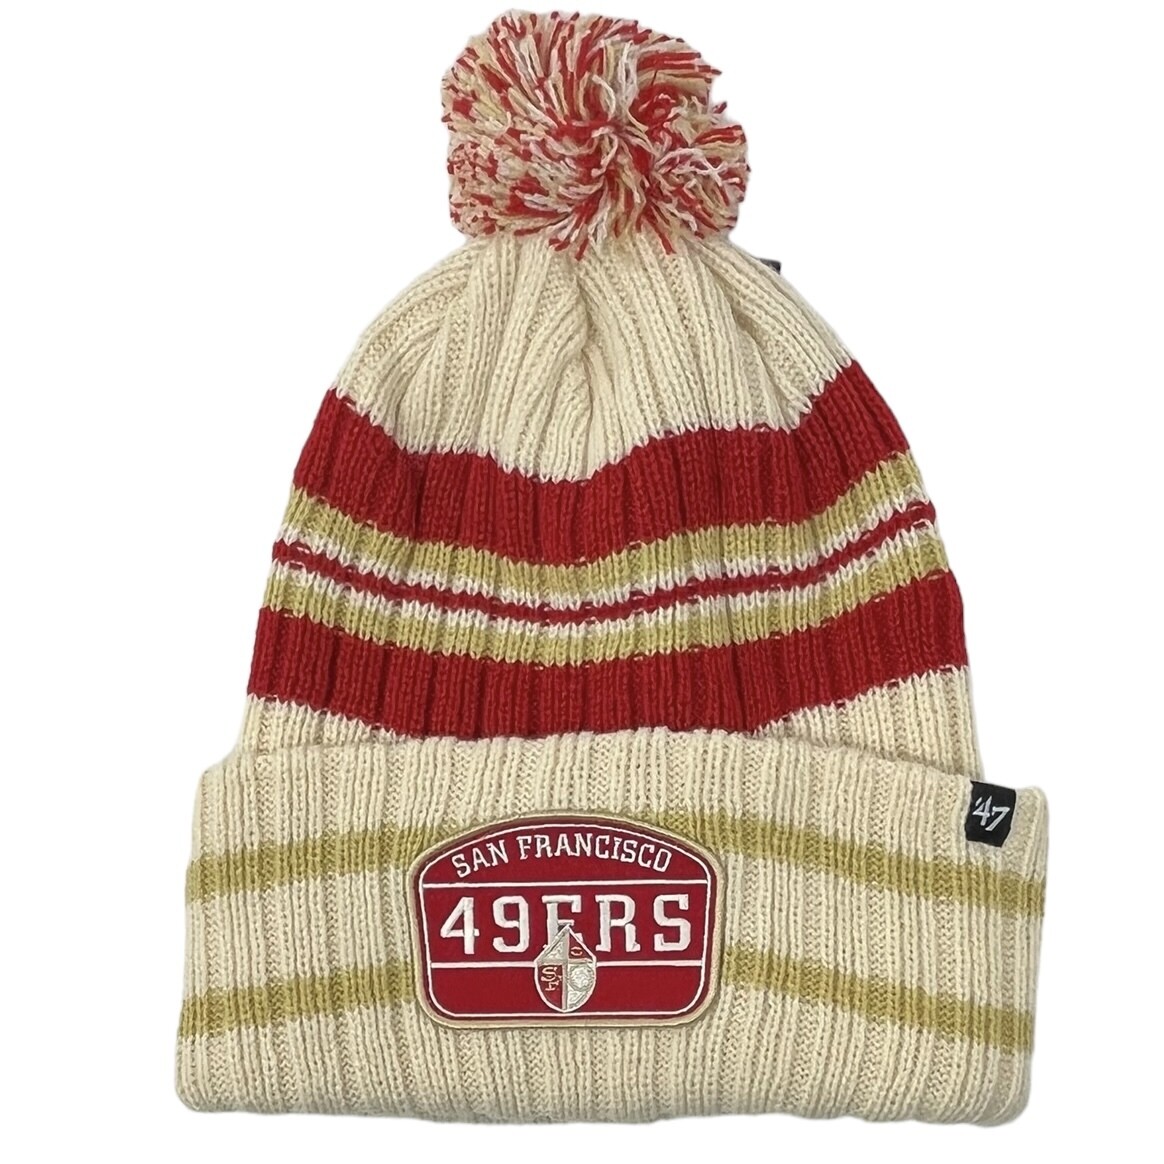 The 49ers Beanie with Yarn Pom Pom, Winter Hat